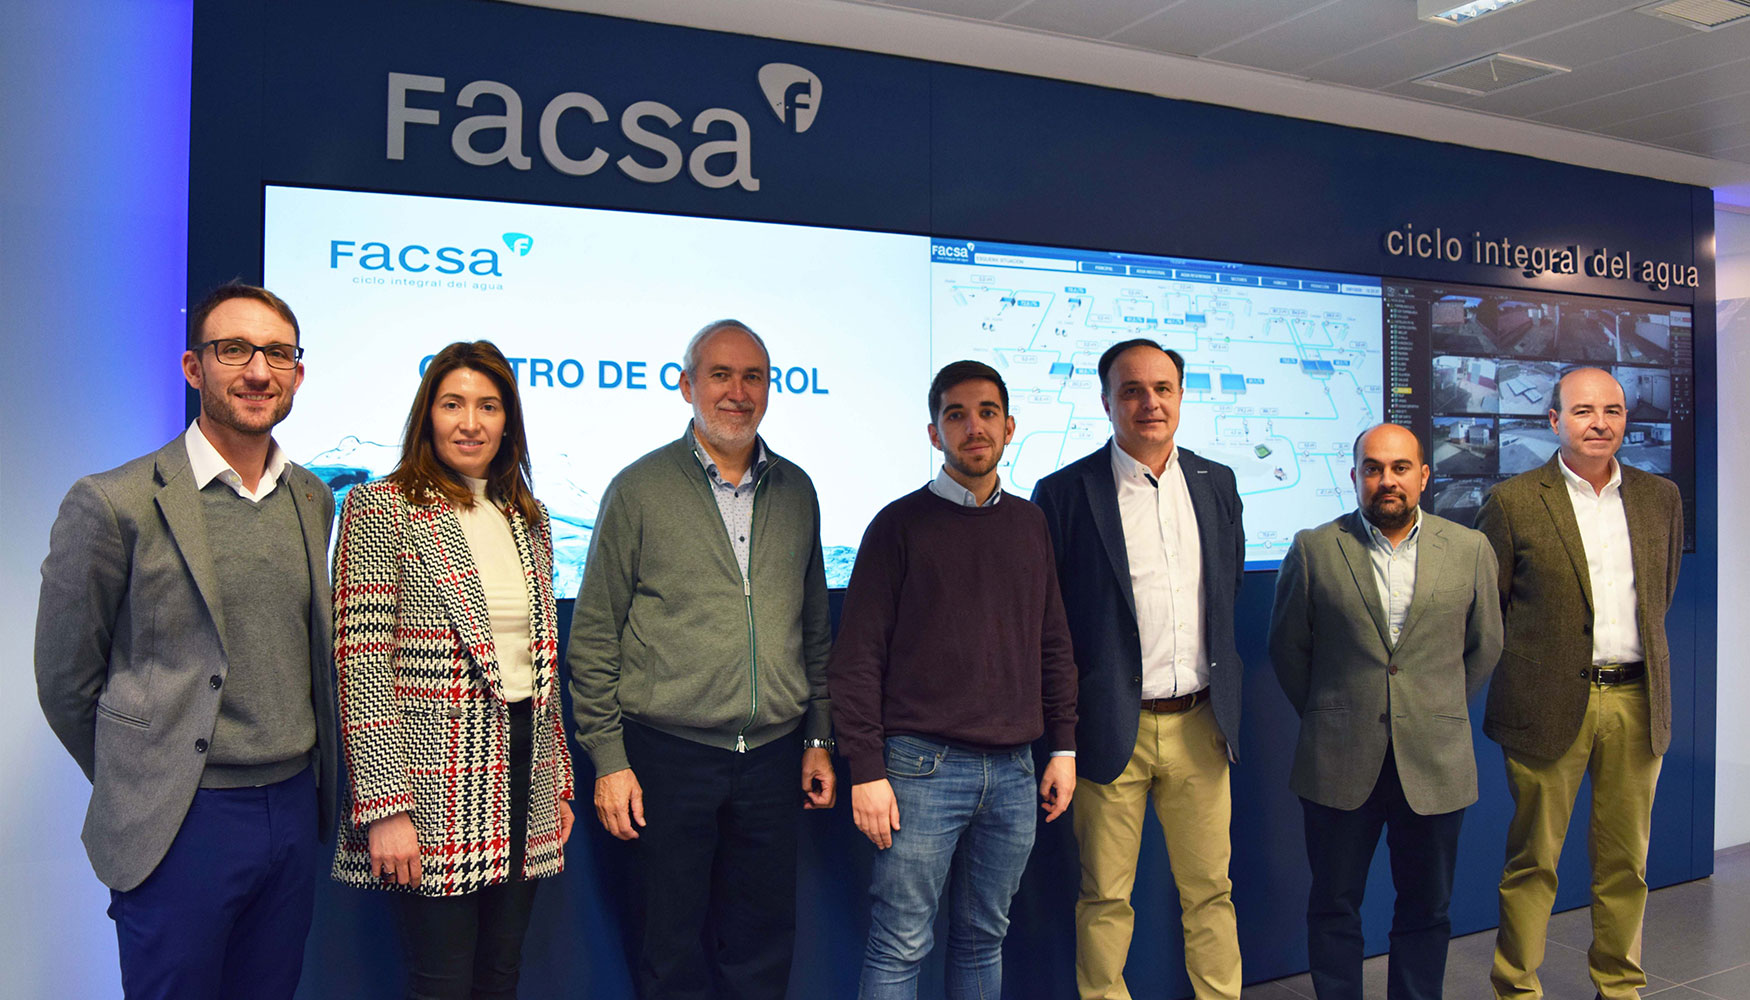 Un momento de la visita del concejal del Ciclo Integral del Agua del Ayuntamiento de Castell, Fernando Navarro, a las instalaciones de Facsa...